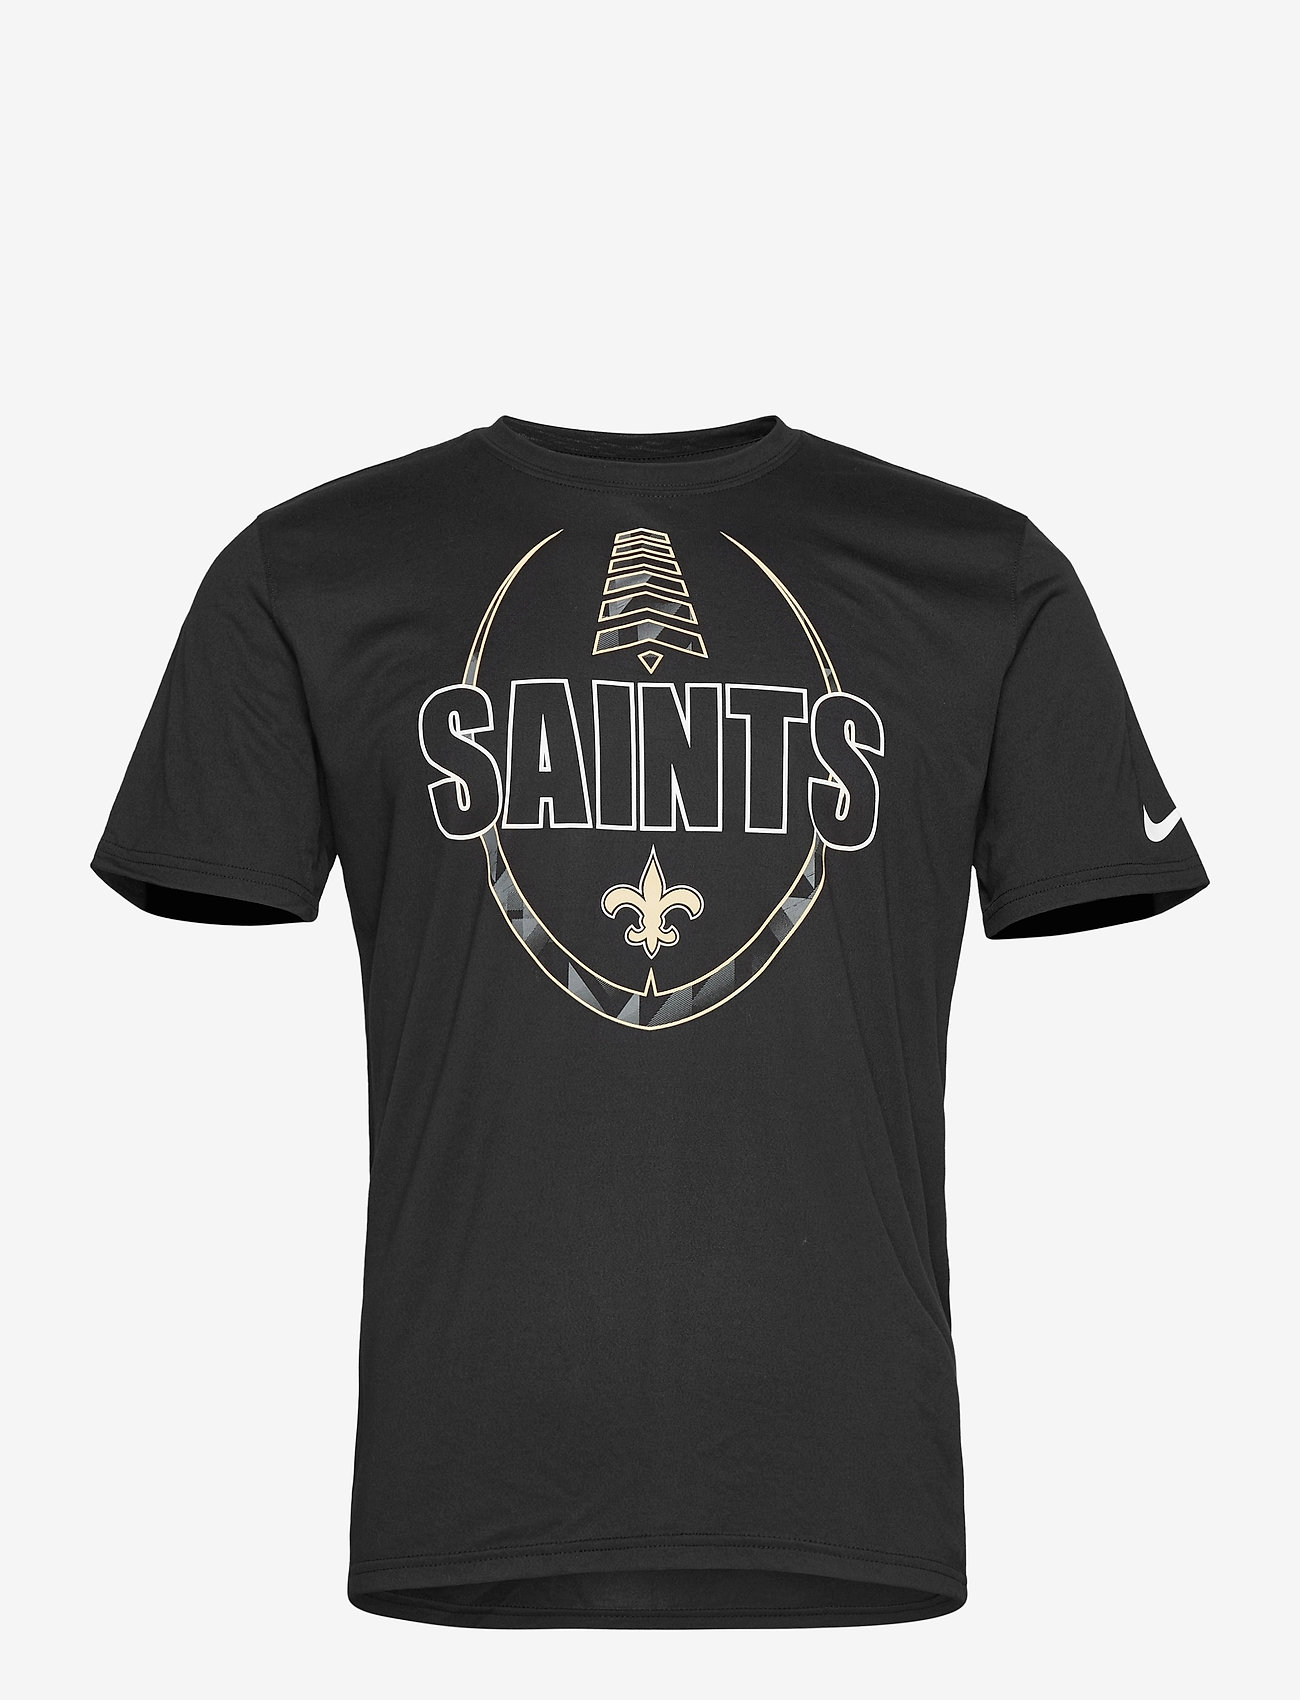 nike saints shirt